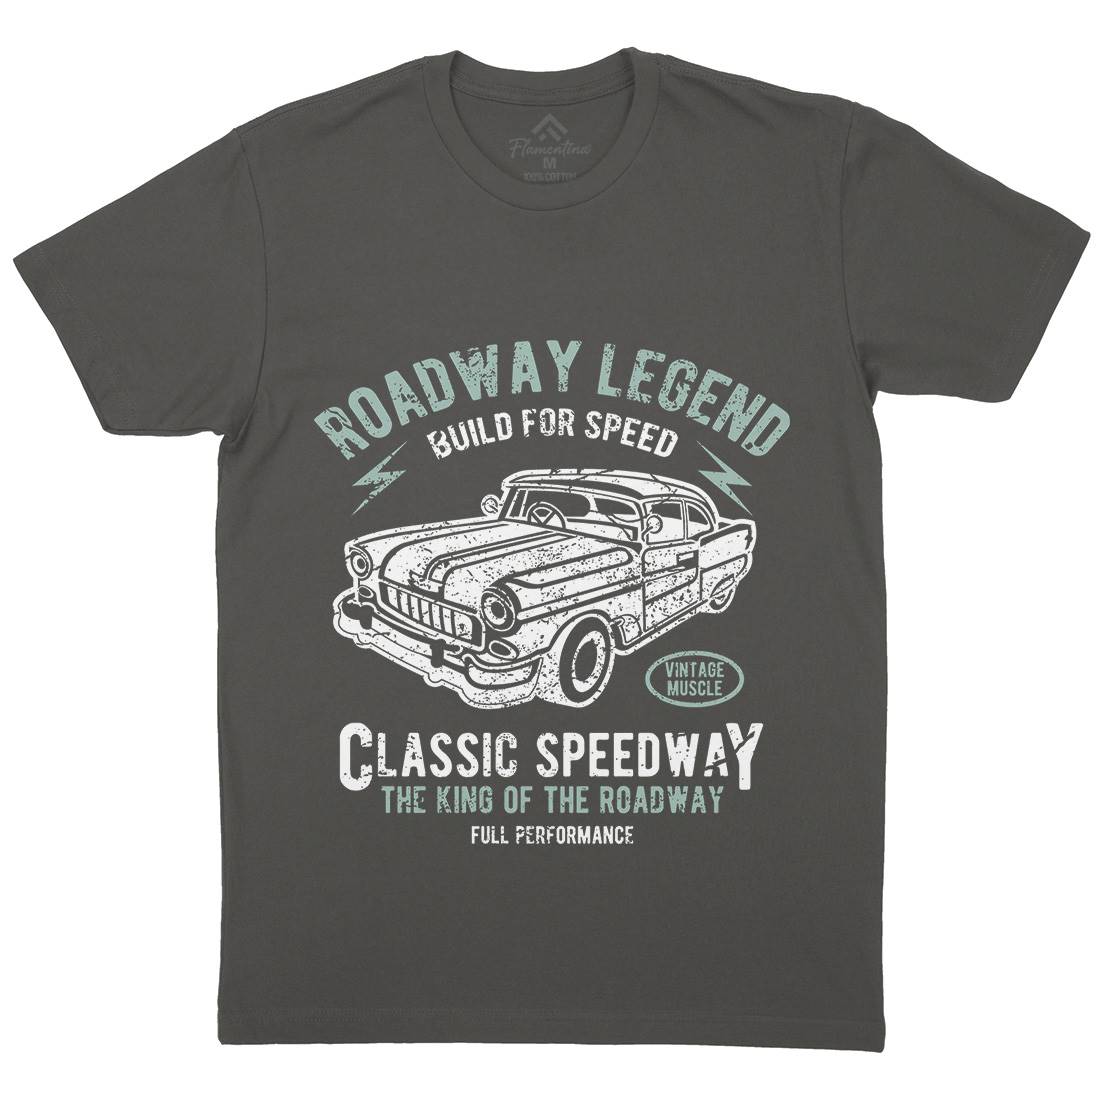 Roadway Legend Mens Crew Neck T-Shirt Cars A124